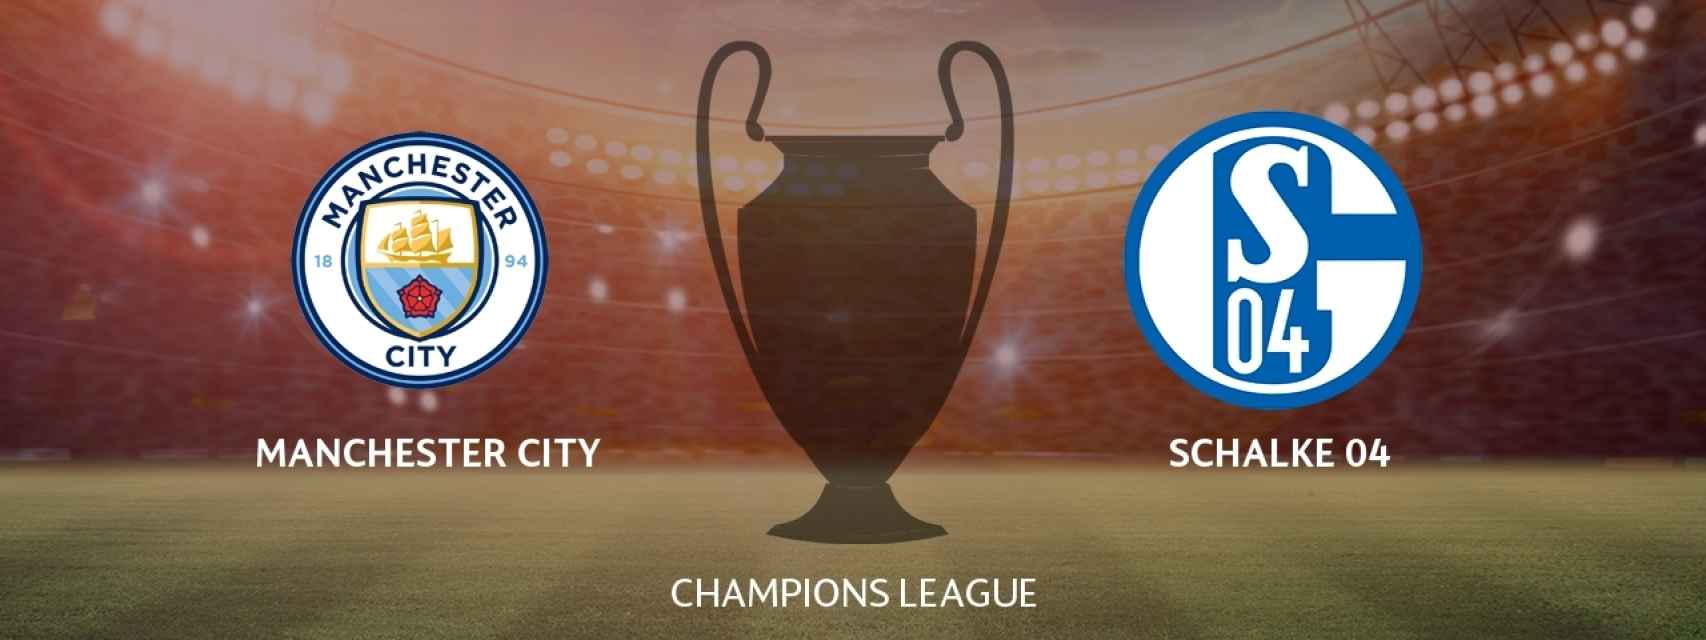 Manchester City - Schalke 04